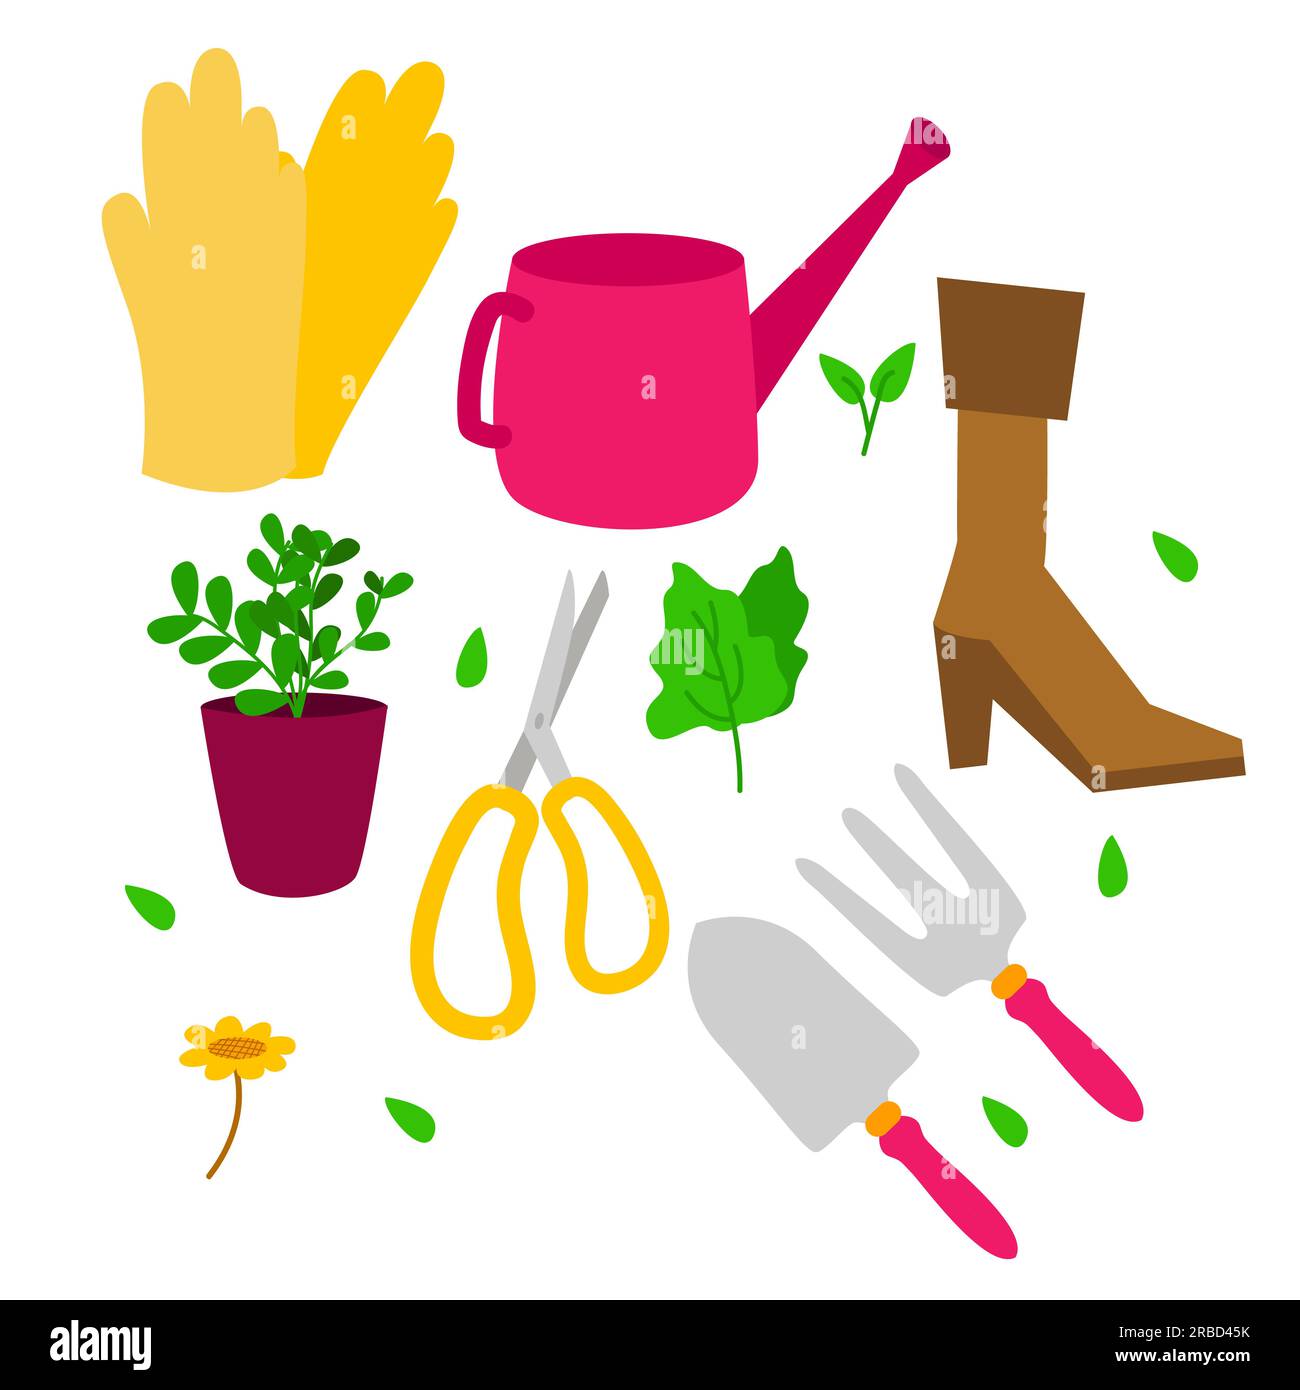 Gartenwerkzeuge Handschuhe Wassersprenger Schuhe Schaufel Heugabel Schere und Topfpflanzen botanischer Gartenbau Accessoire Stock Vektor